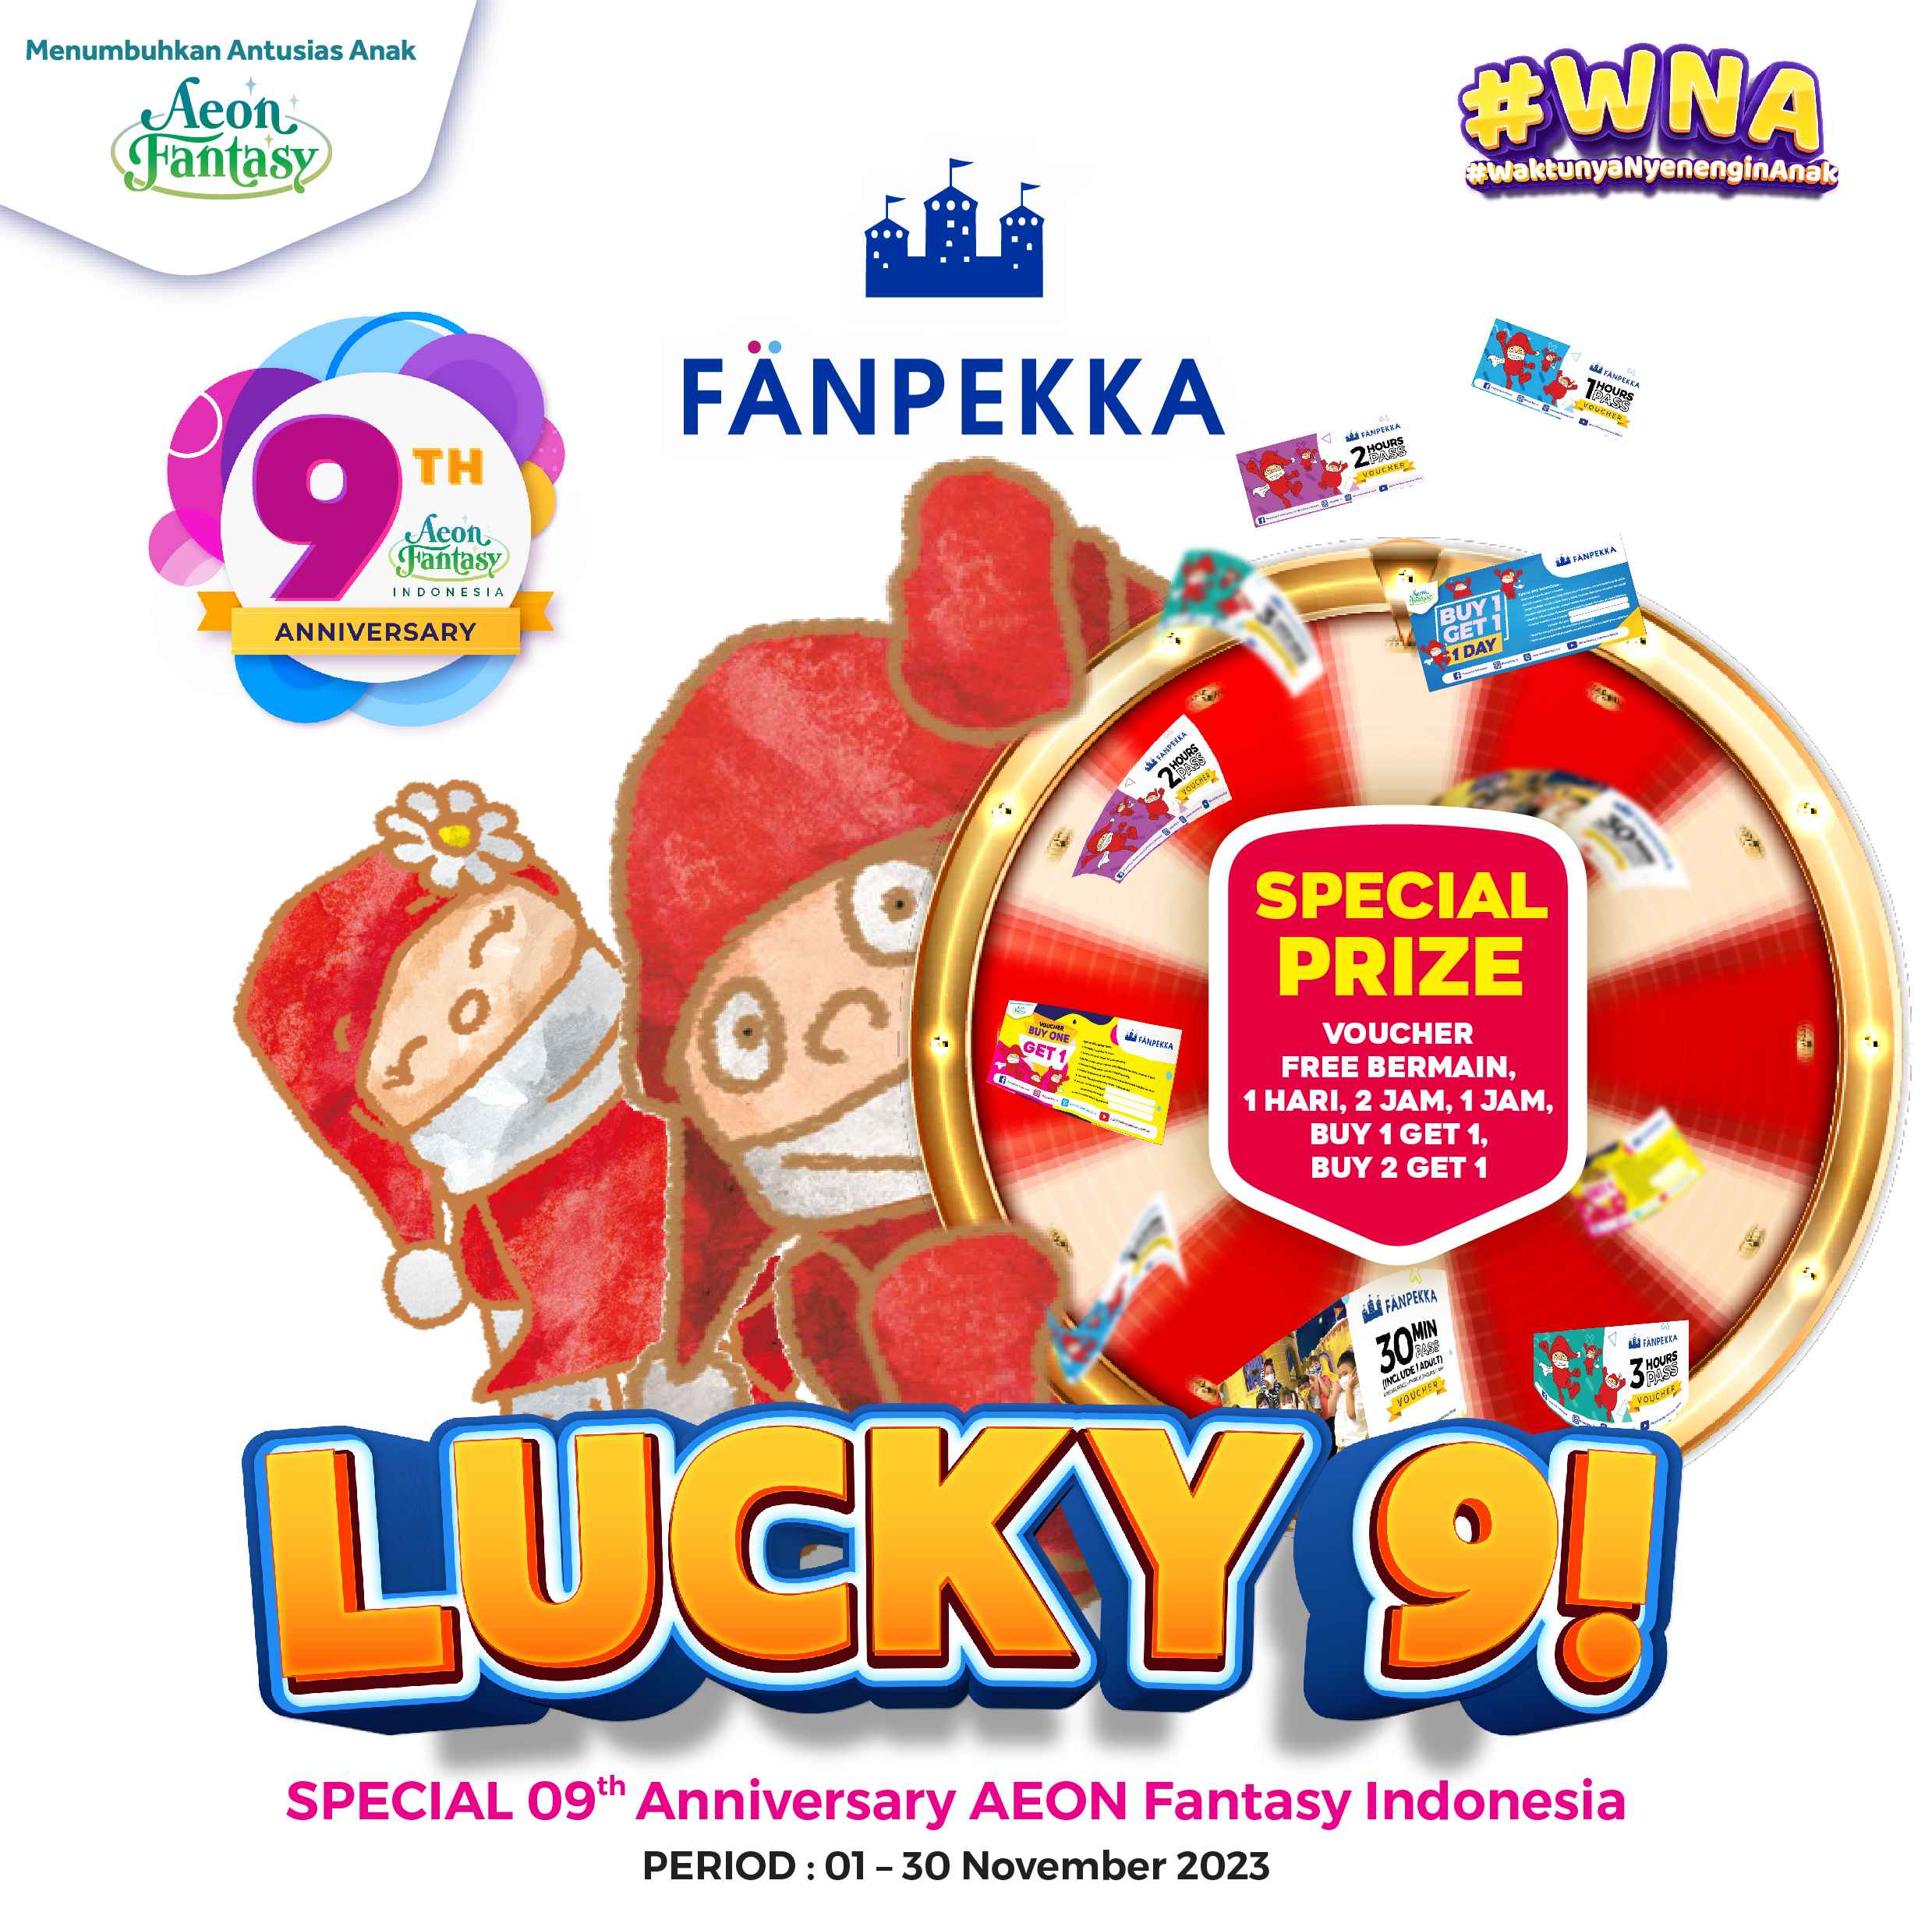 [Fanpekka] Lucky 9 Promo